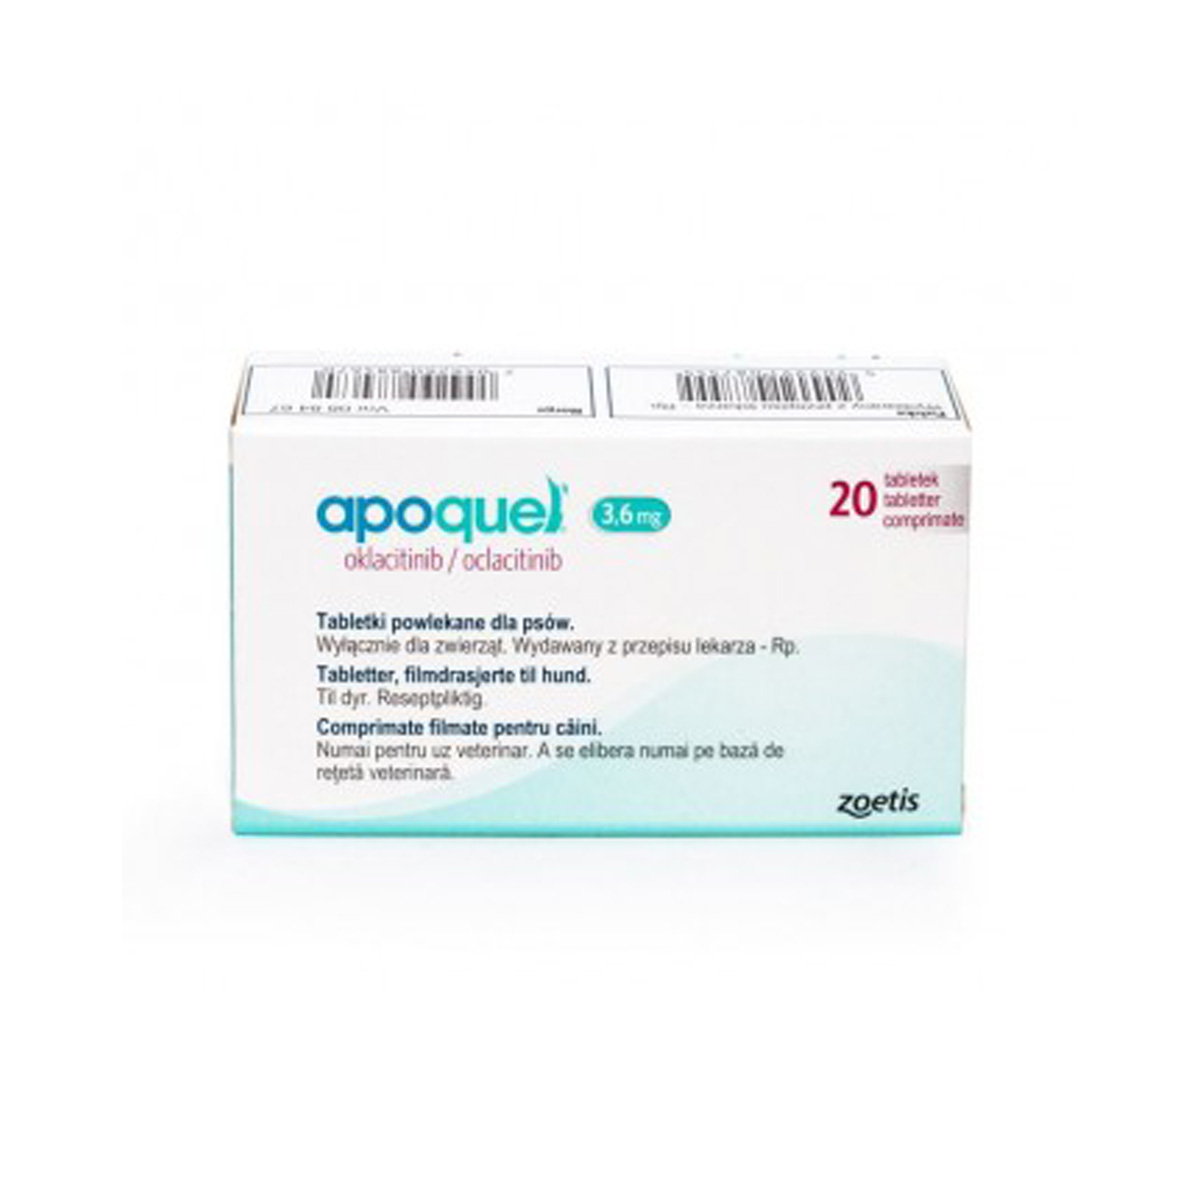 Apoquel 3.6 mg pentru caini 20 tablete thepetclub.ro/